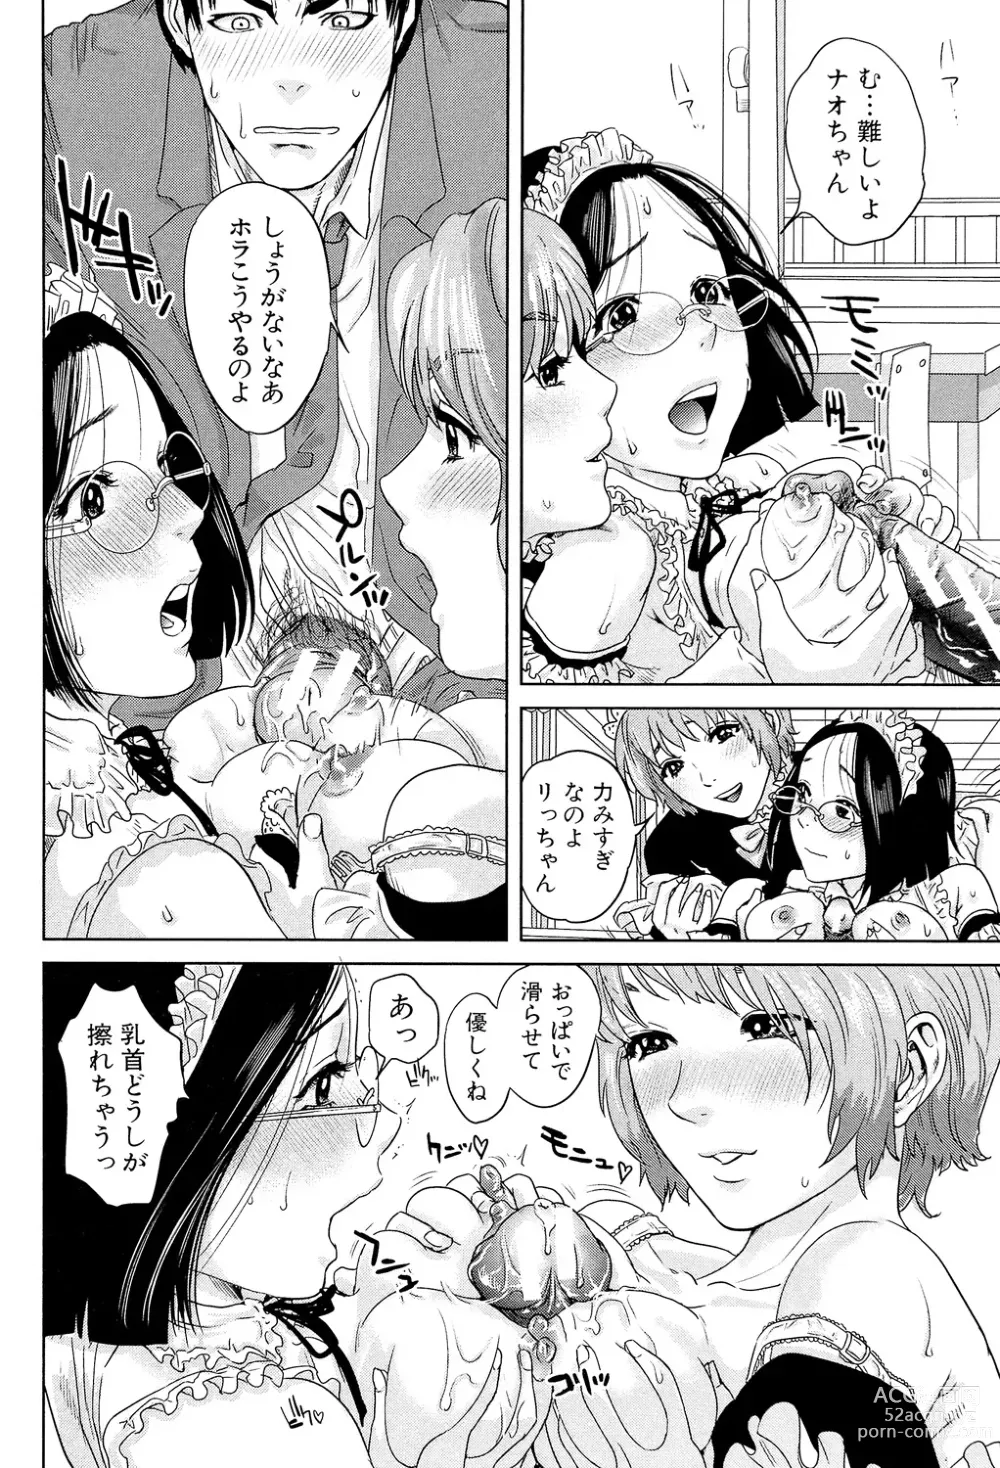 Page 194 of manga Boku-tachi no Kinki